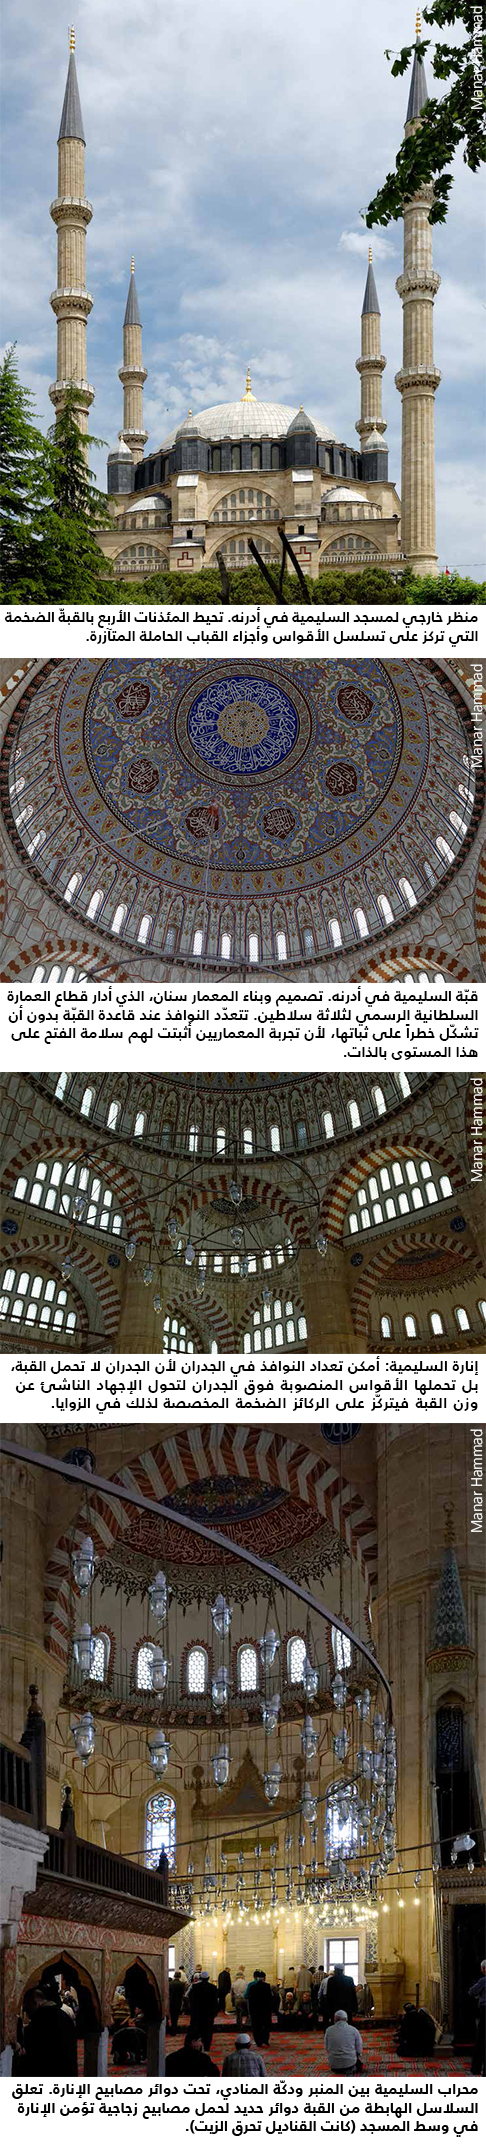 مسجد السليمية في أدرنه (تركيا)